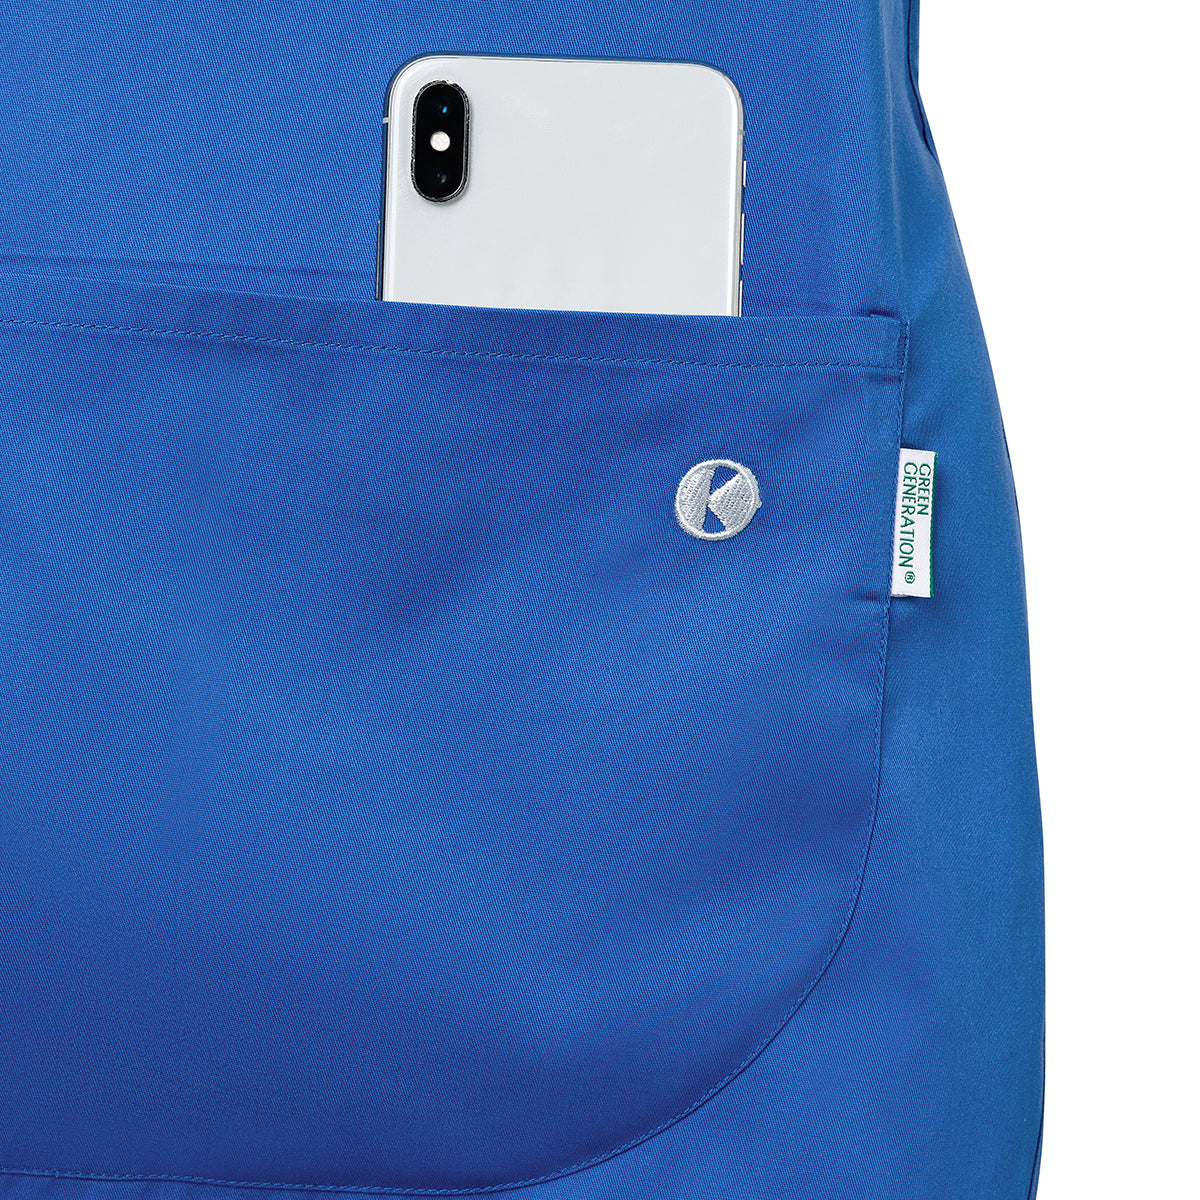 (6 stk.) Karlowsky - Throw Over Jacket Essential - Royal Blue - Størrelse: XL